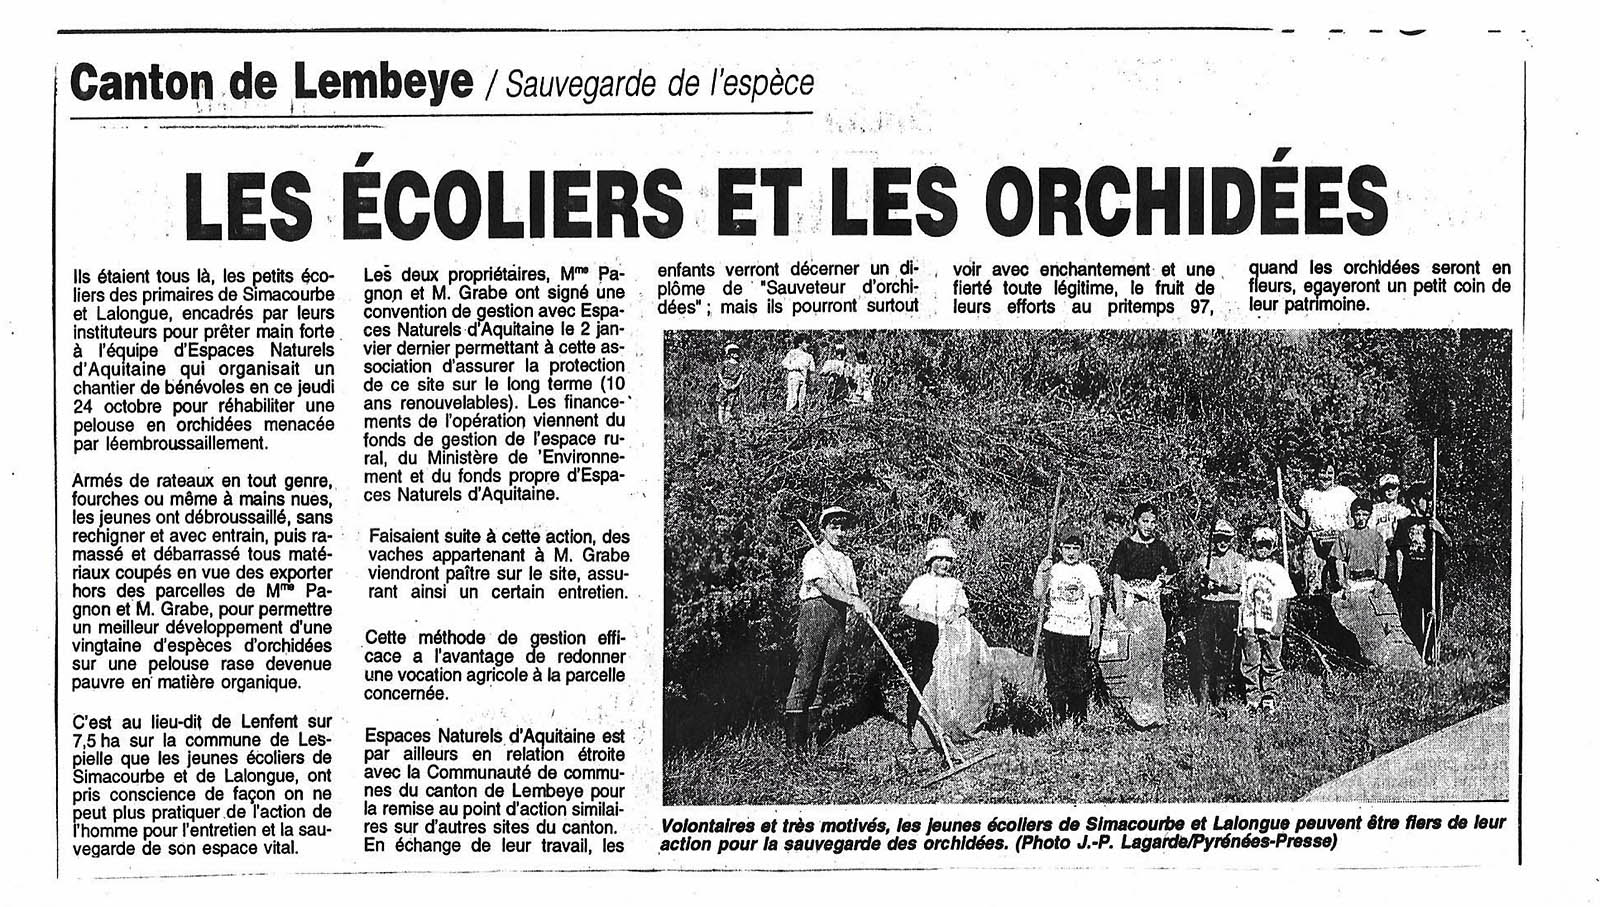 Article du journal de la République des Pyrénées pour la rénovation des pelouses à orchidées du 26 octobre 1996